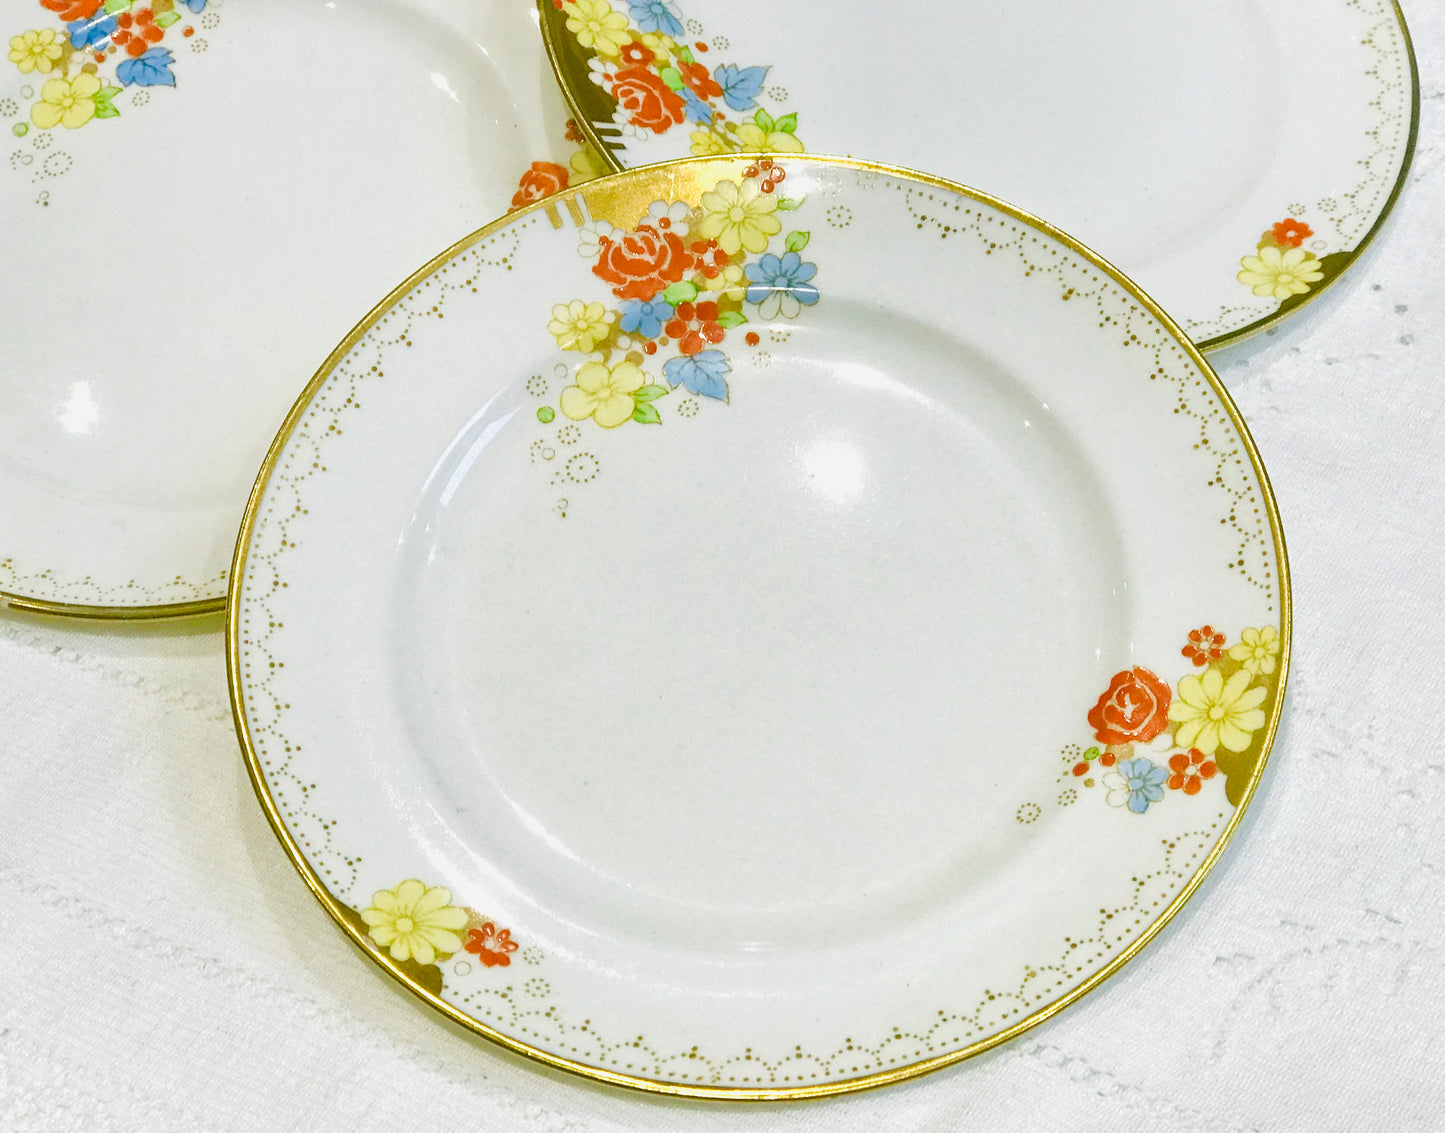 Vintage Tea Plates - “Gleneagles”